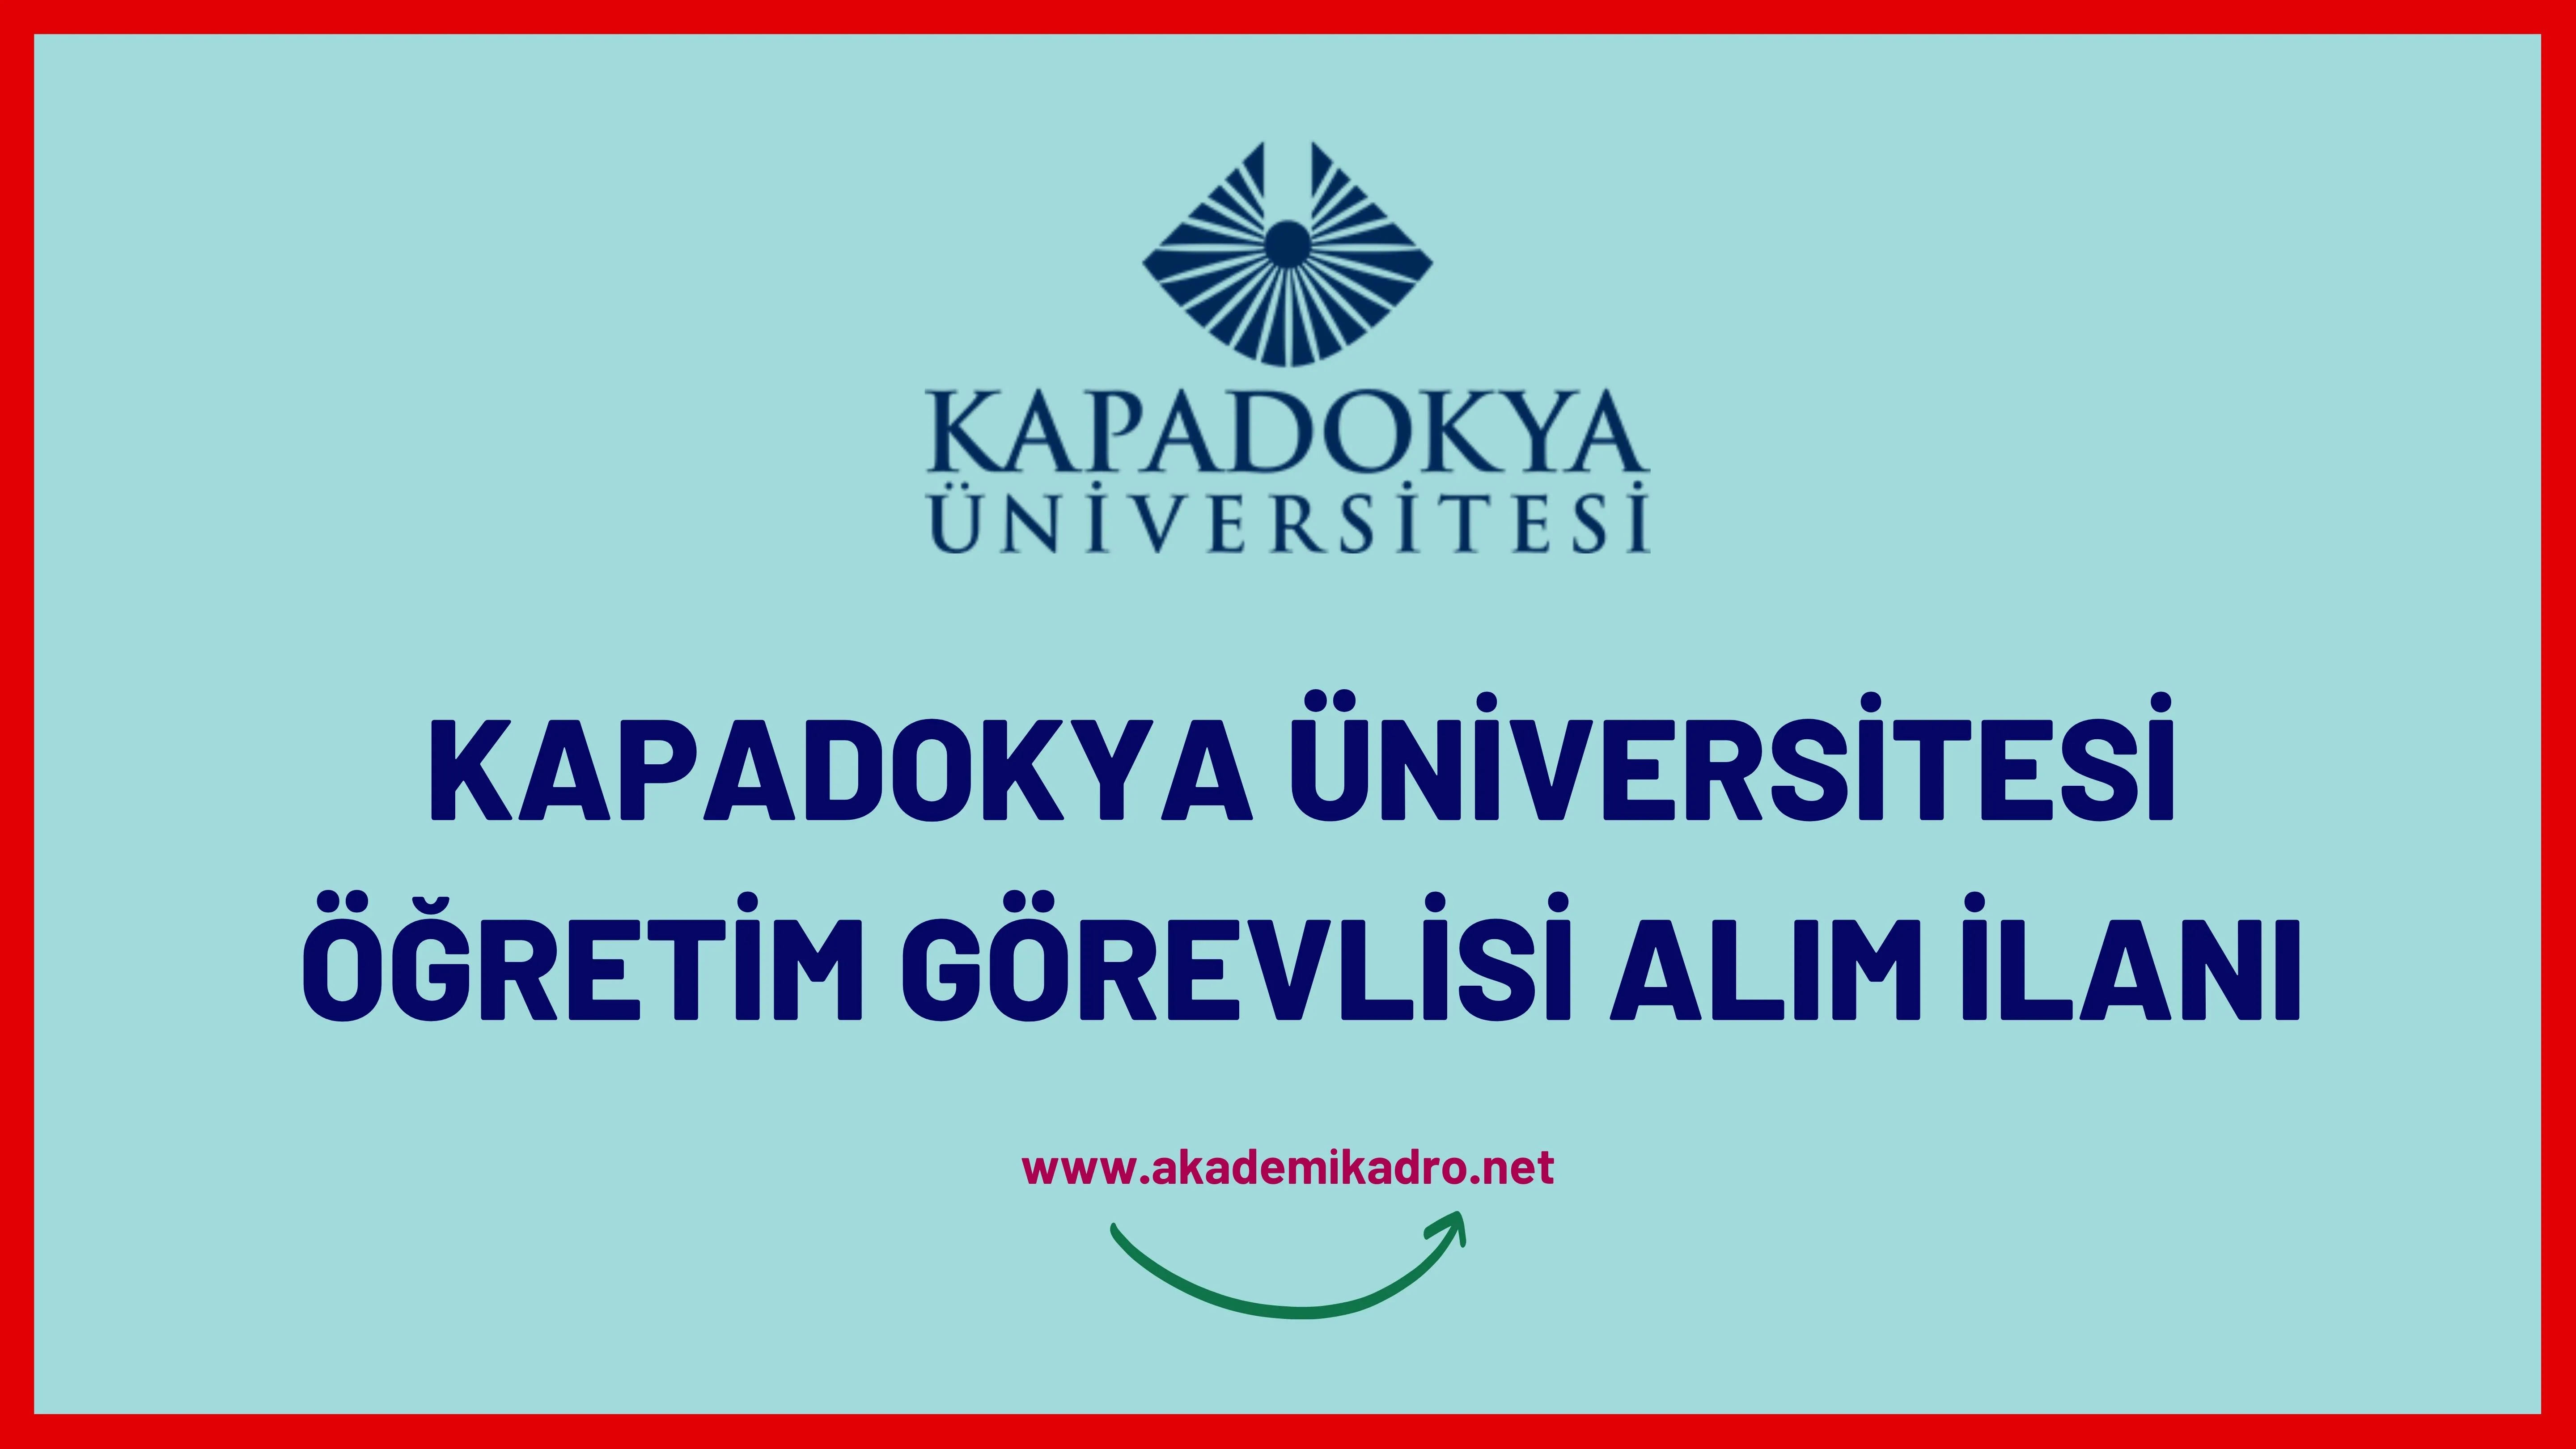 Kapadokya Üniversitesi Öğretim görevlisi alacak. Son başvuru tarihi 03 Şubat 2023.